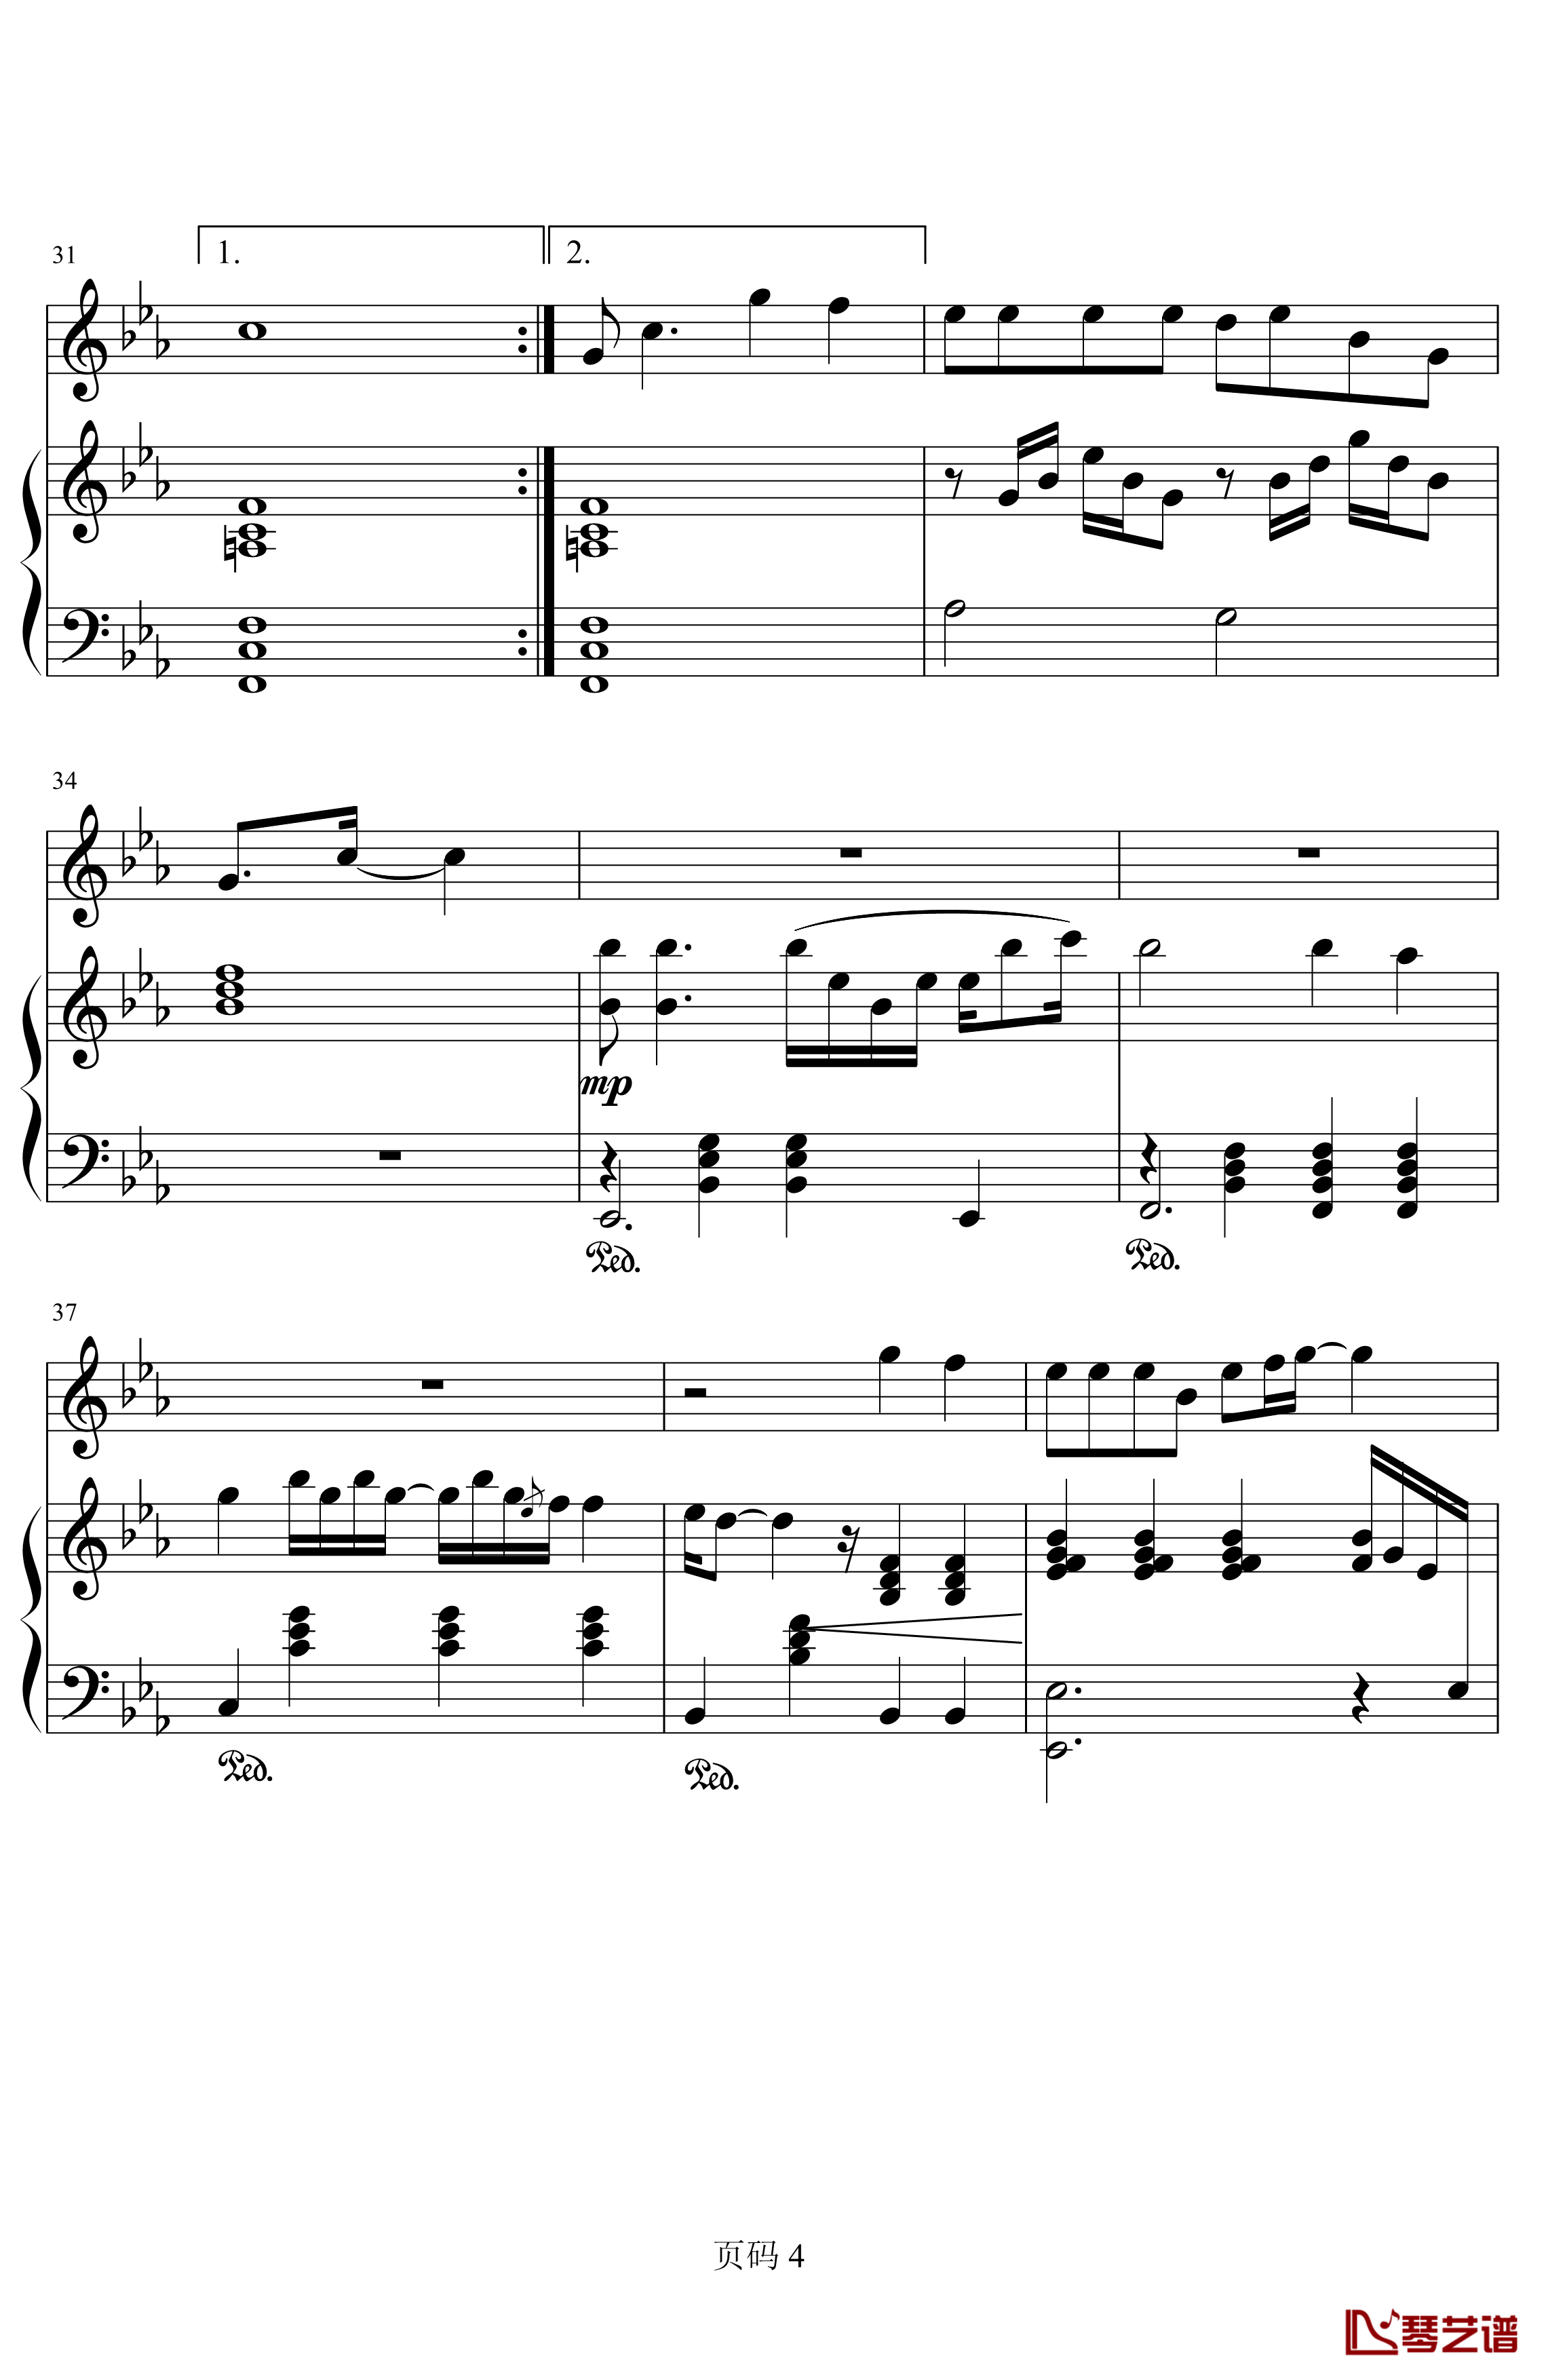 唯一钢琴谱-简化-王力宏4